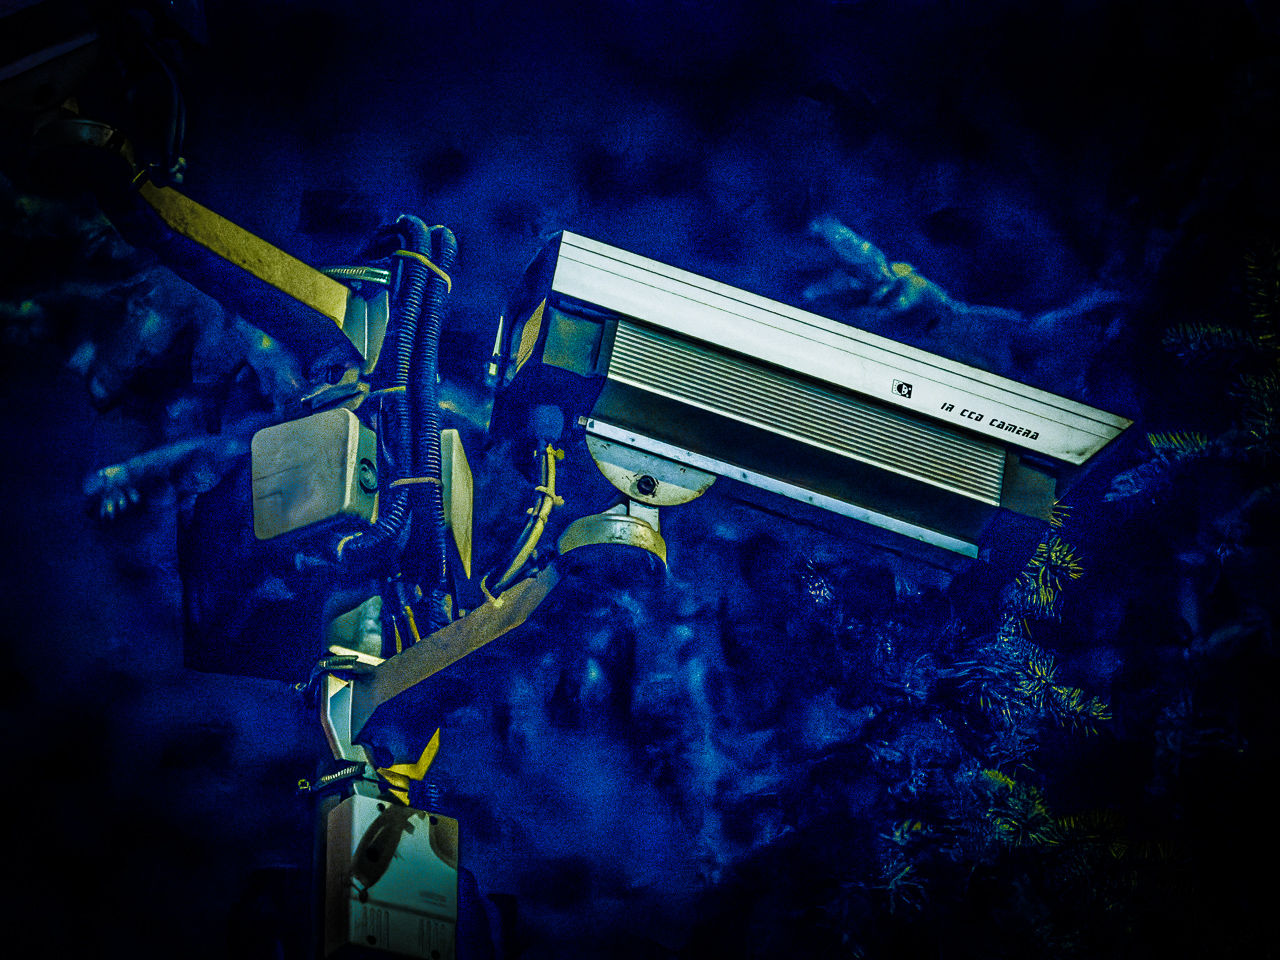 ÜberwachungsKamera in einer NachtSzene. Das Licht hat einen Blaustich, der für kalte, bedrohliche Atmosphäre sorgt.